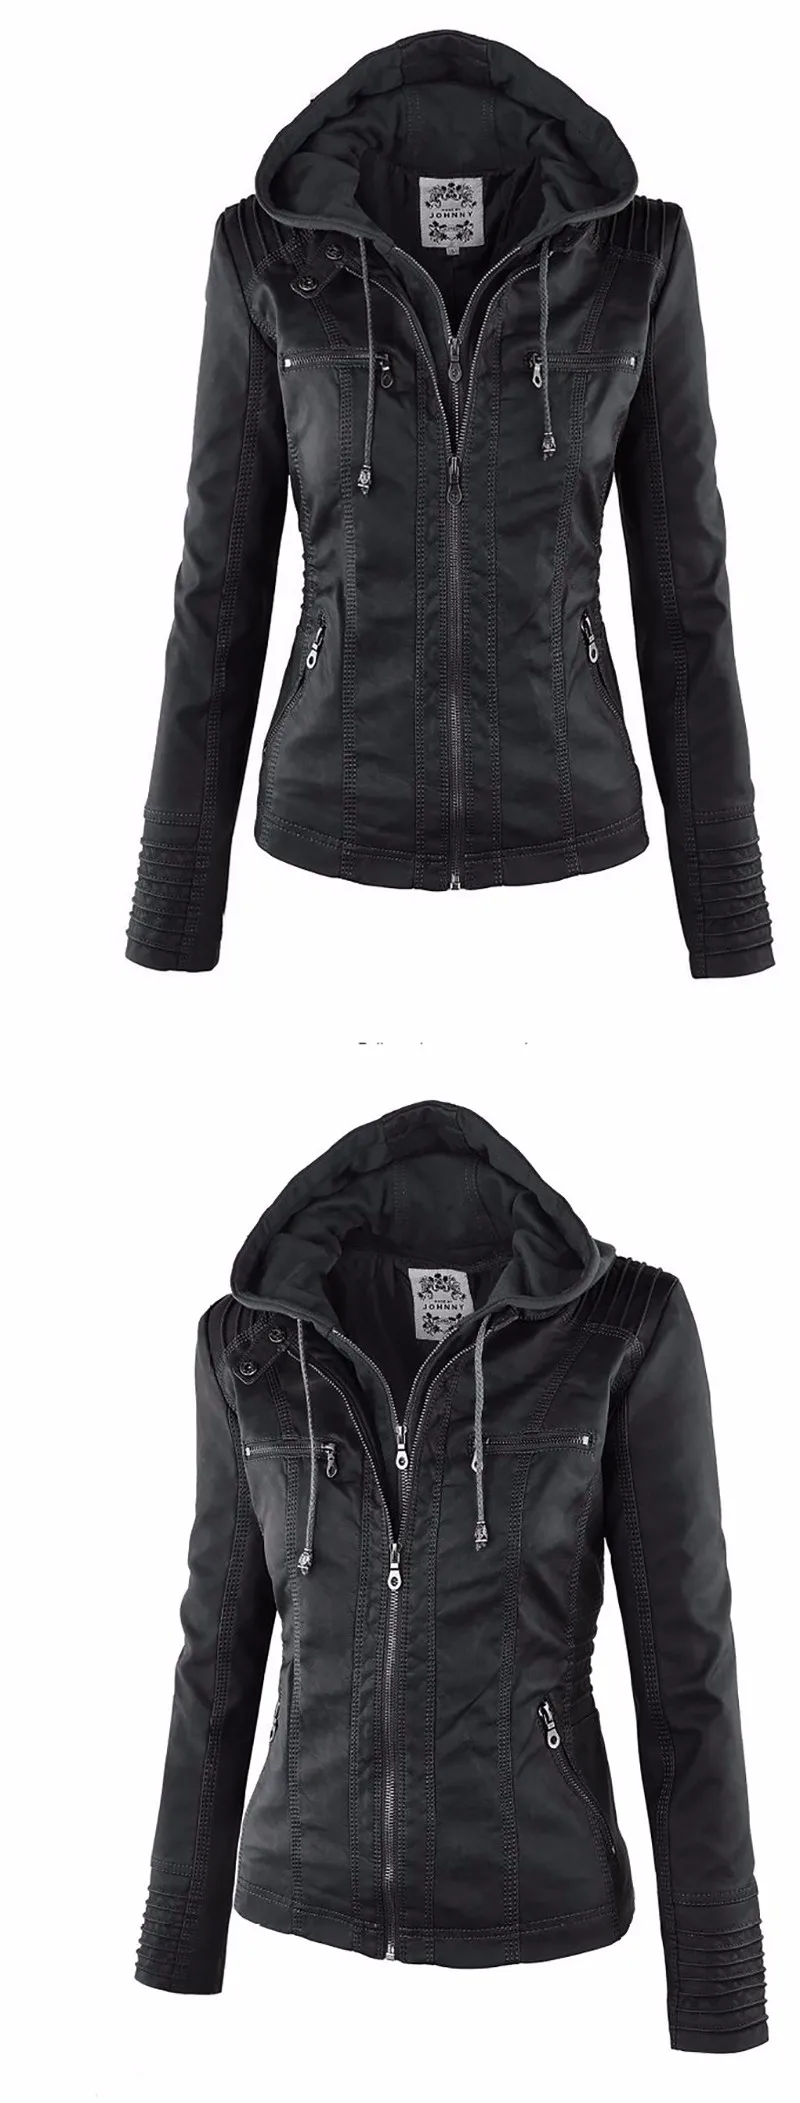 2020 Fashion Winter Faux Leather Jacket Women's Basic Jackets Hooded Black Slim Motorcycle Jacket Women Coats Female XS-7XL 50